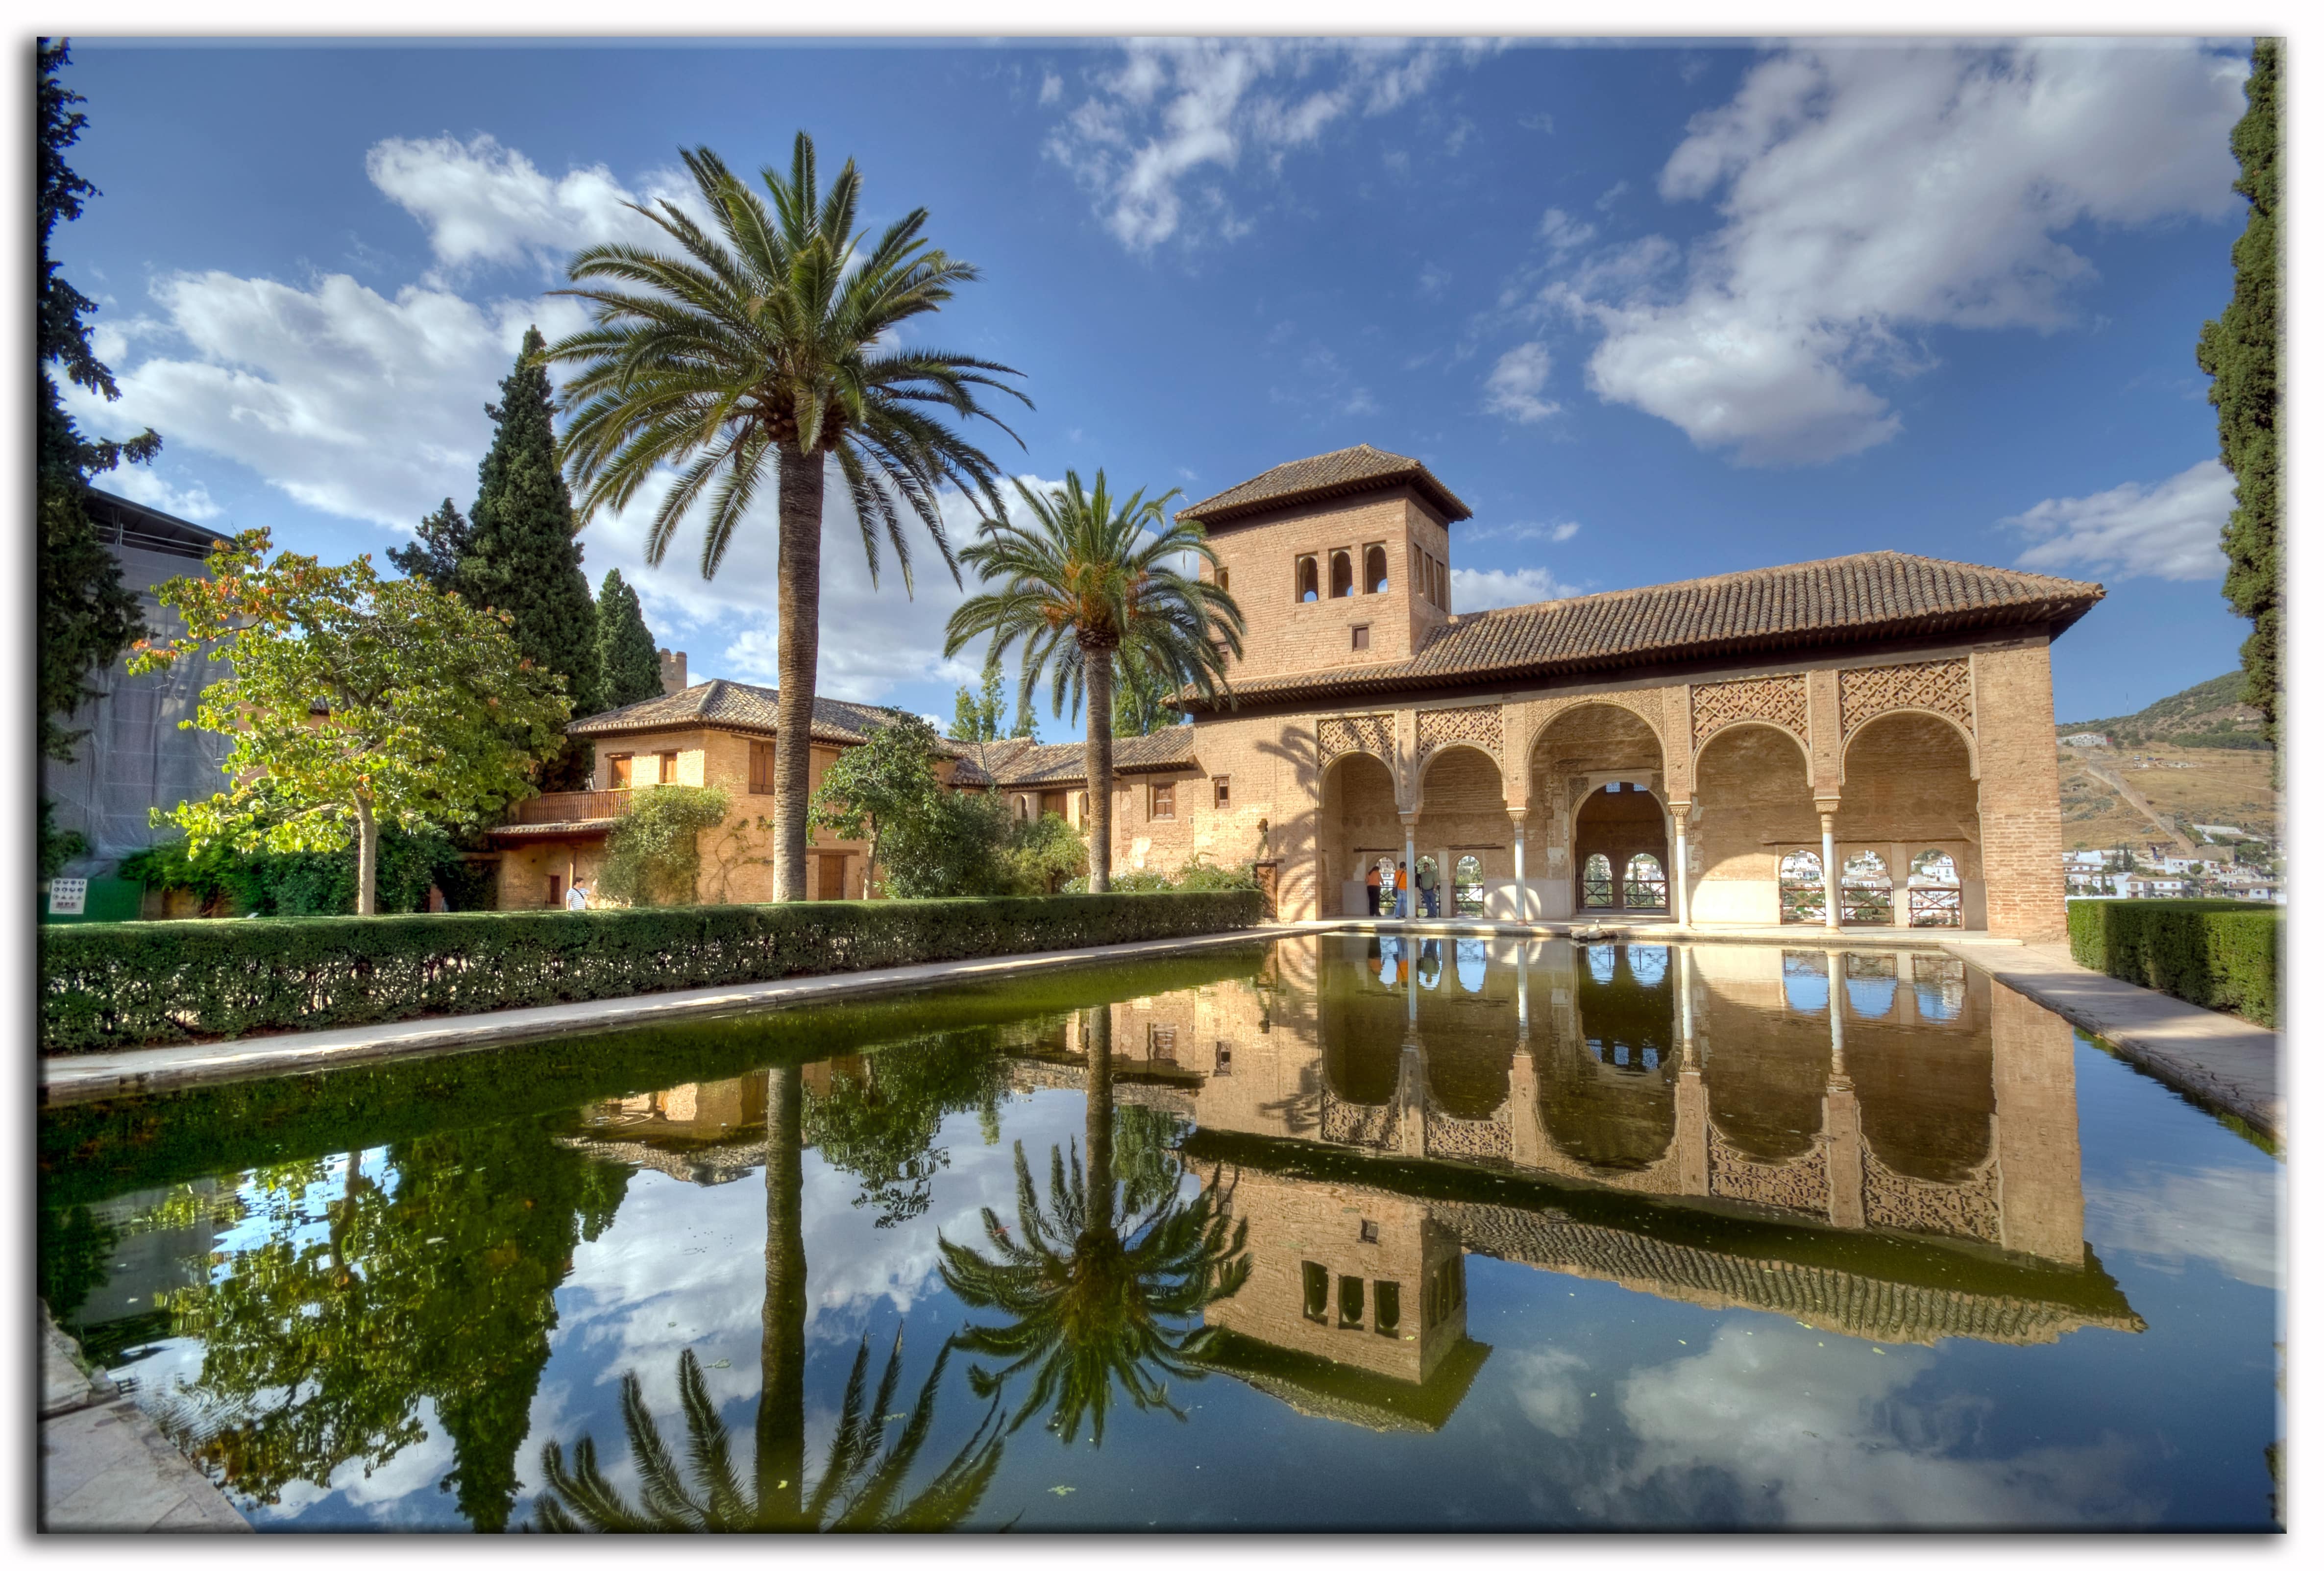 Der Partal, Alhambra von Granada